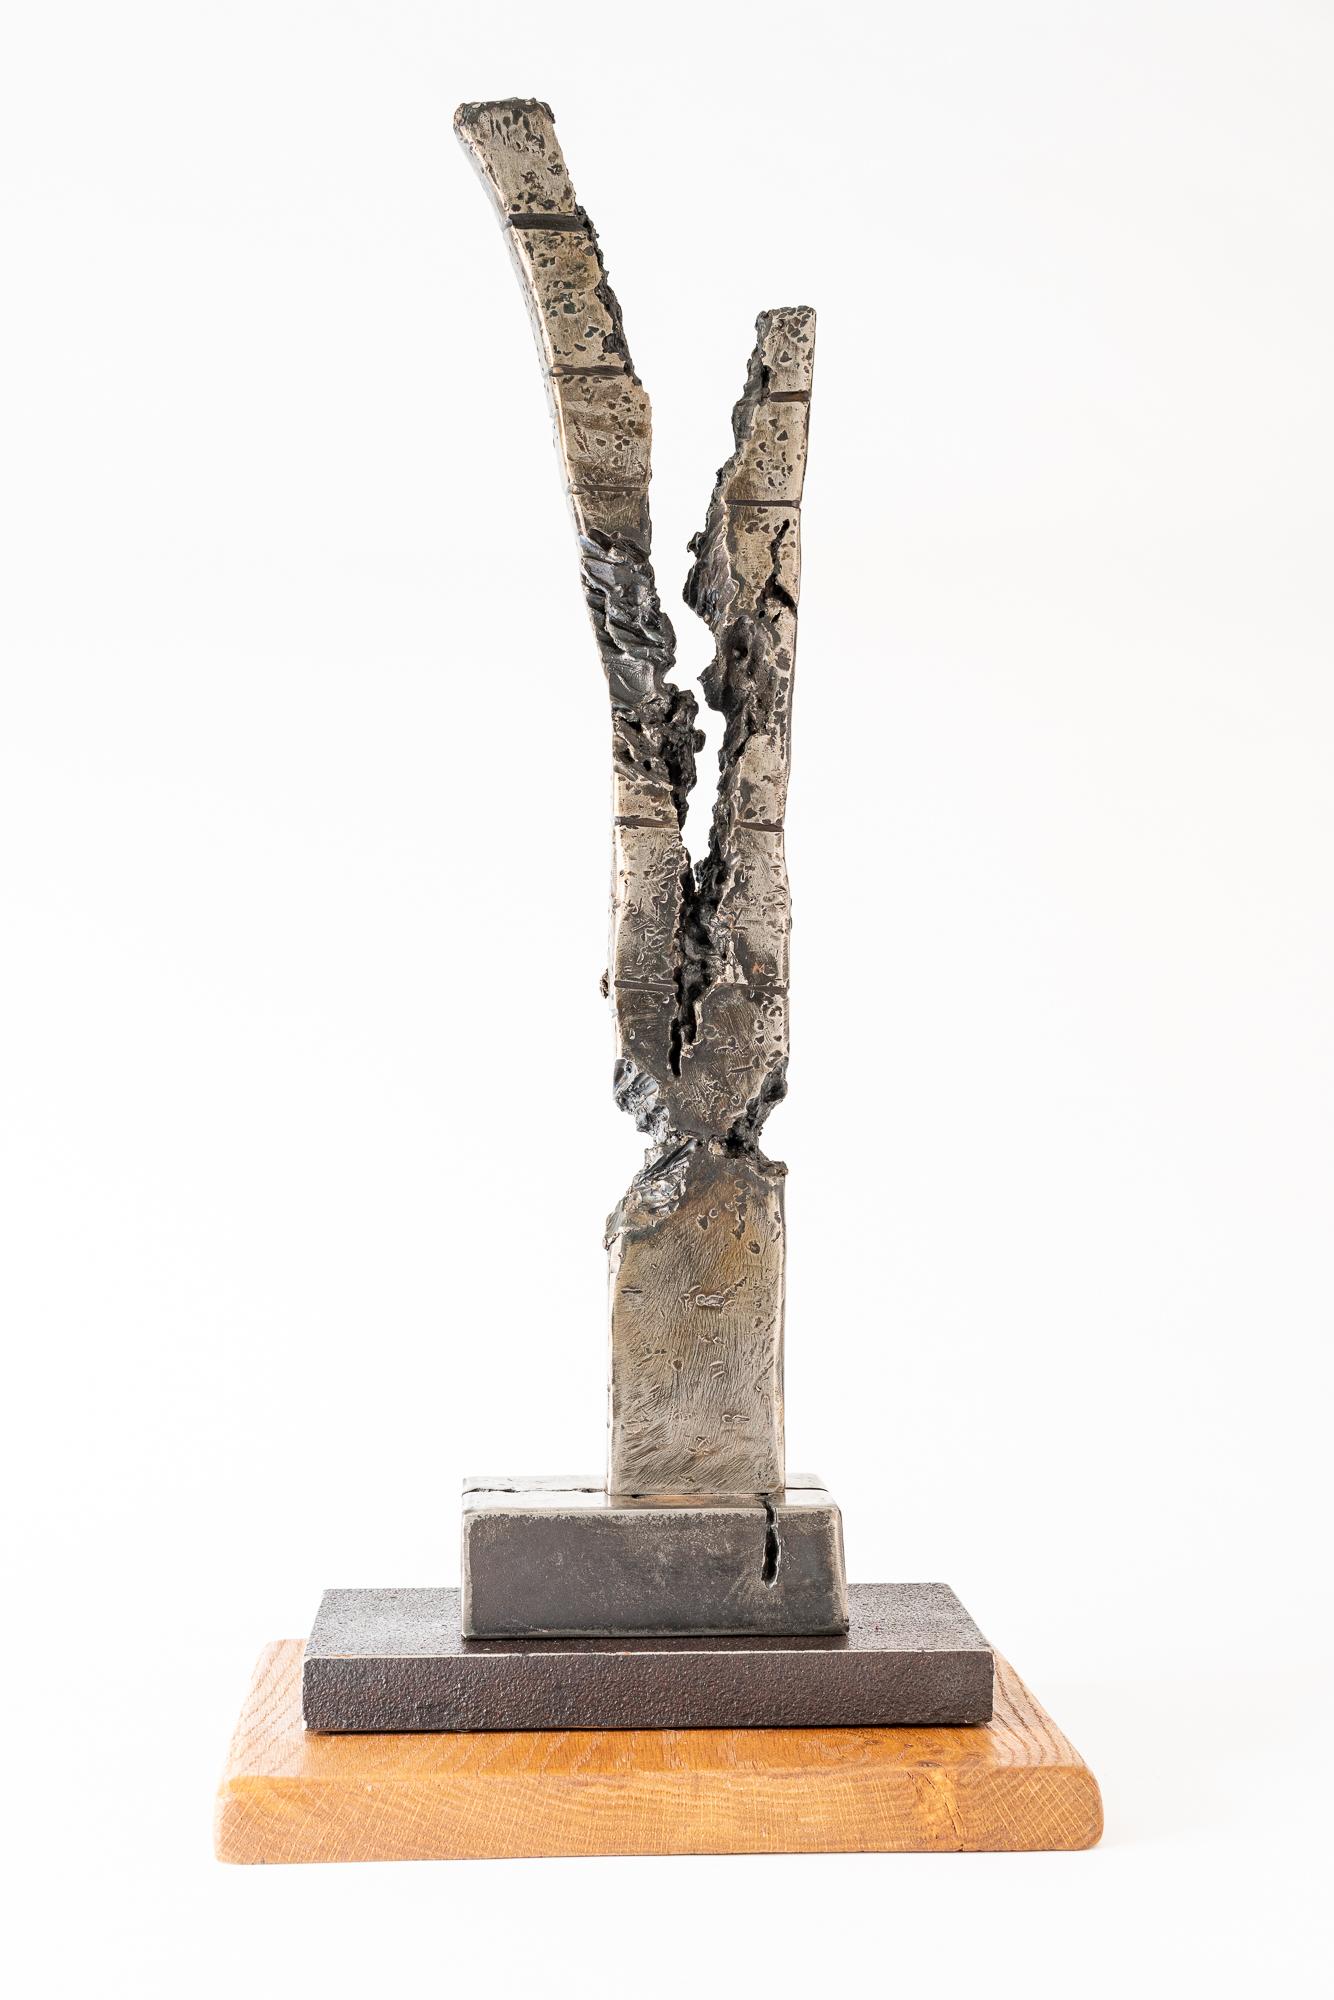 Sculpture unique en acier soudé Howard Lewis - "Forced Divide" 2018

Cette sculpture abstraite en métal de Howard Lewis est réalisée à partir d'une barre massive d'acier recyclé. Il a été coupé, façonné, poli et "sculpté" à l'aide d'abrasifs et